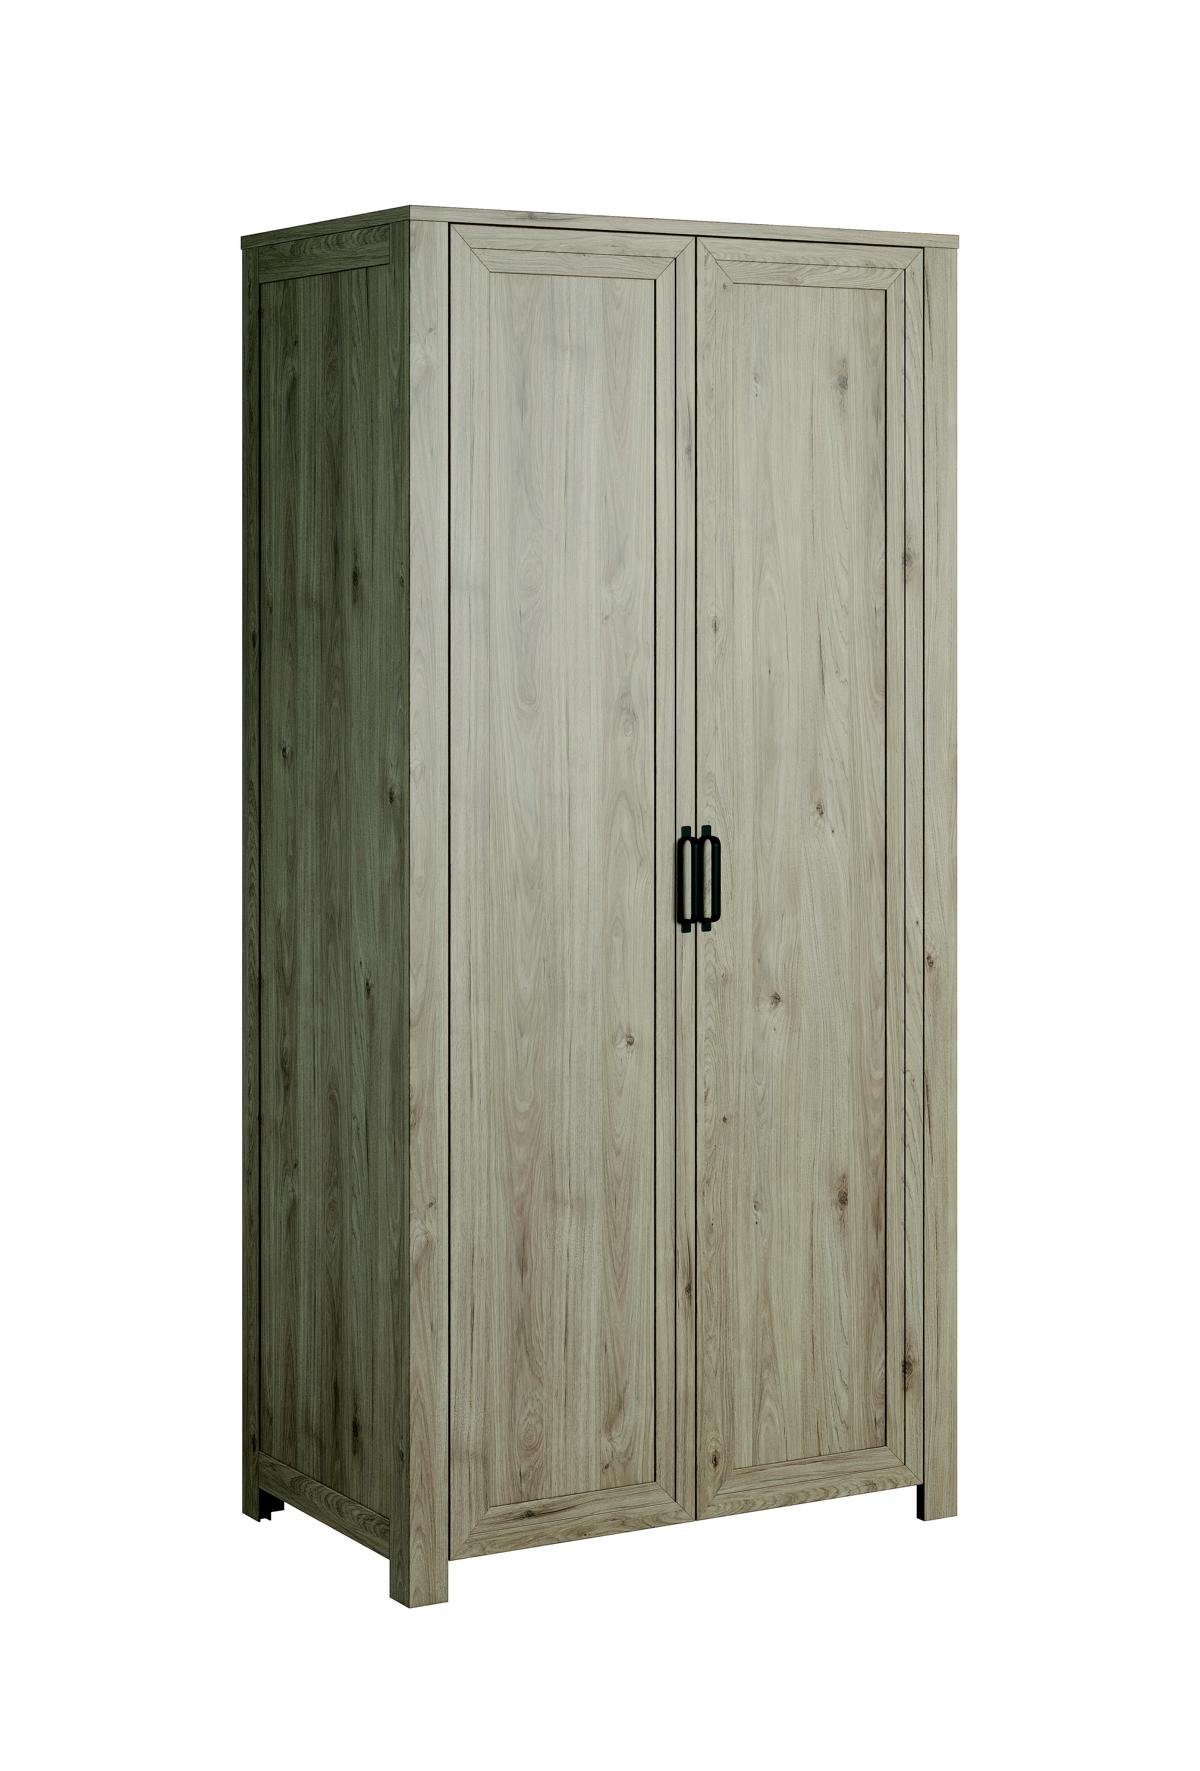 Kleiderschrank Stil Schlafzimmer Wohnzimmer Klassischer JVmoebel Kleiderschrank Holz Modern Garderobe